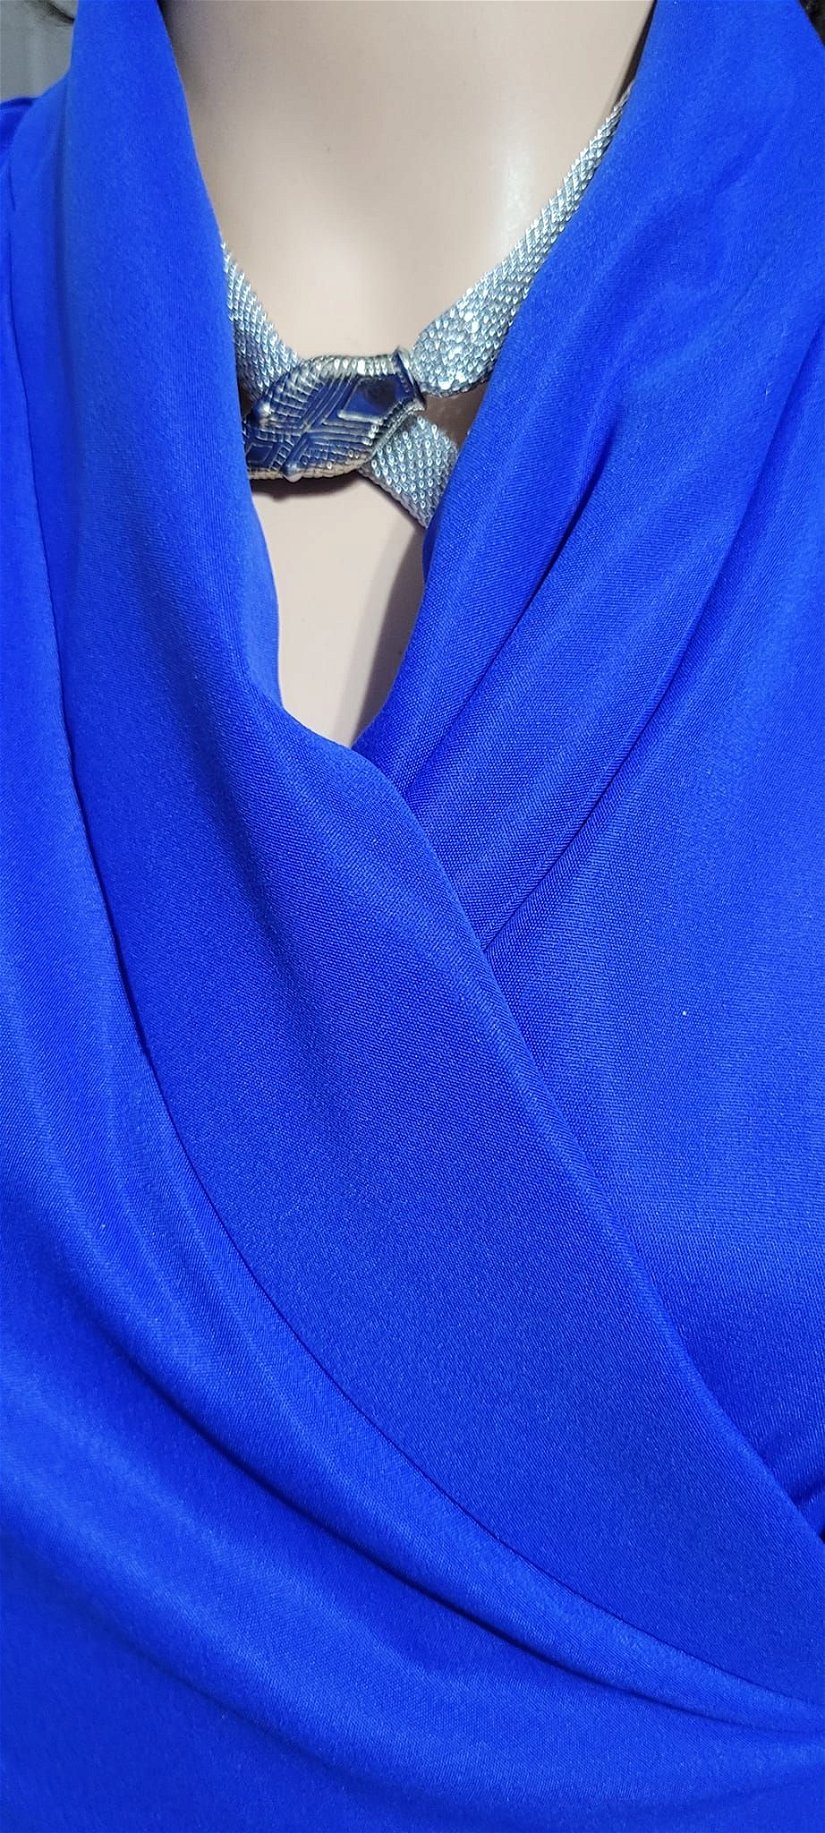 Rochie albastru electric model petrecut